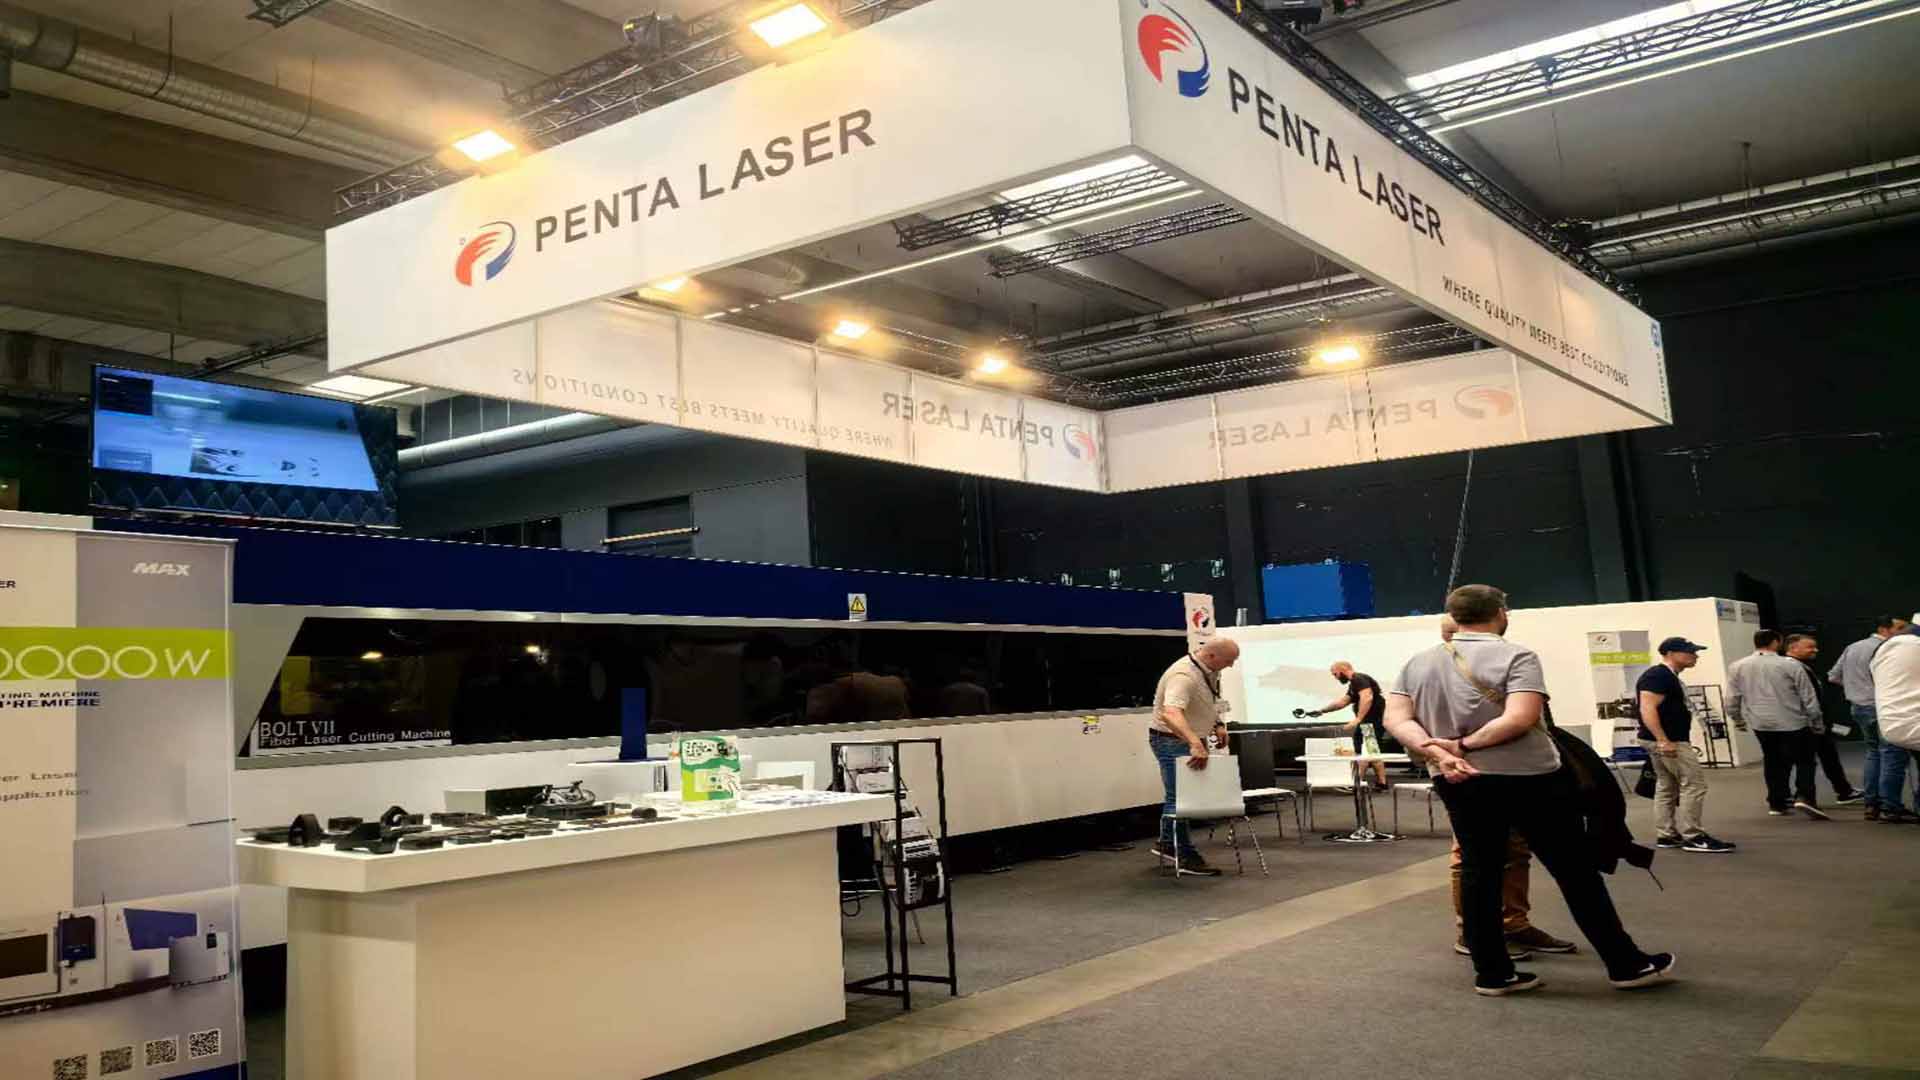 بلجيكا وتايلاند تعملان معا في معارض مزدوجة ، سلسلة Penta Laser BOLT 7 تجذب الانتباه العالمي